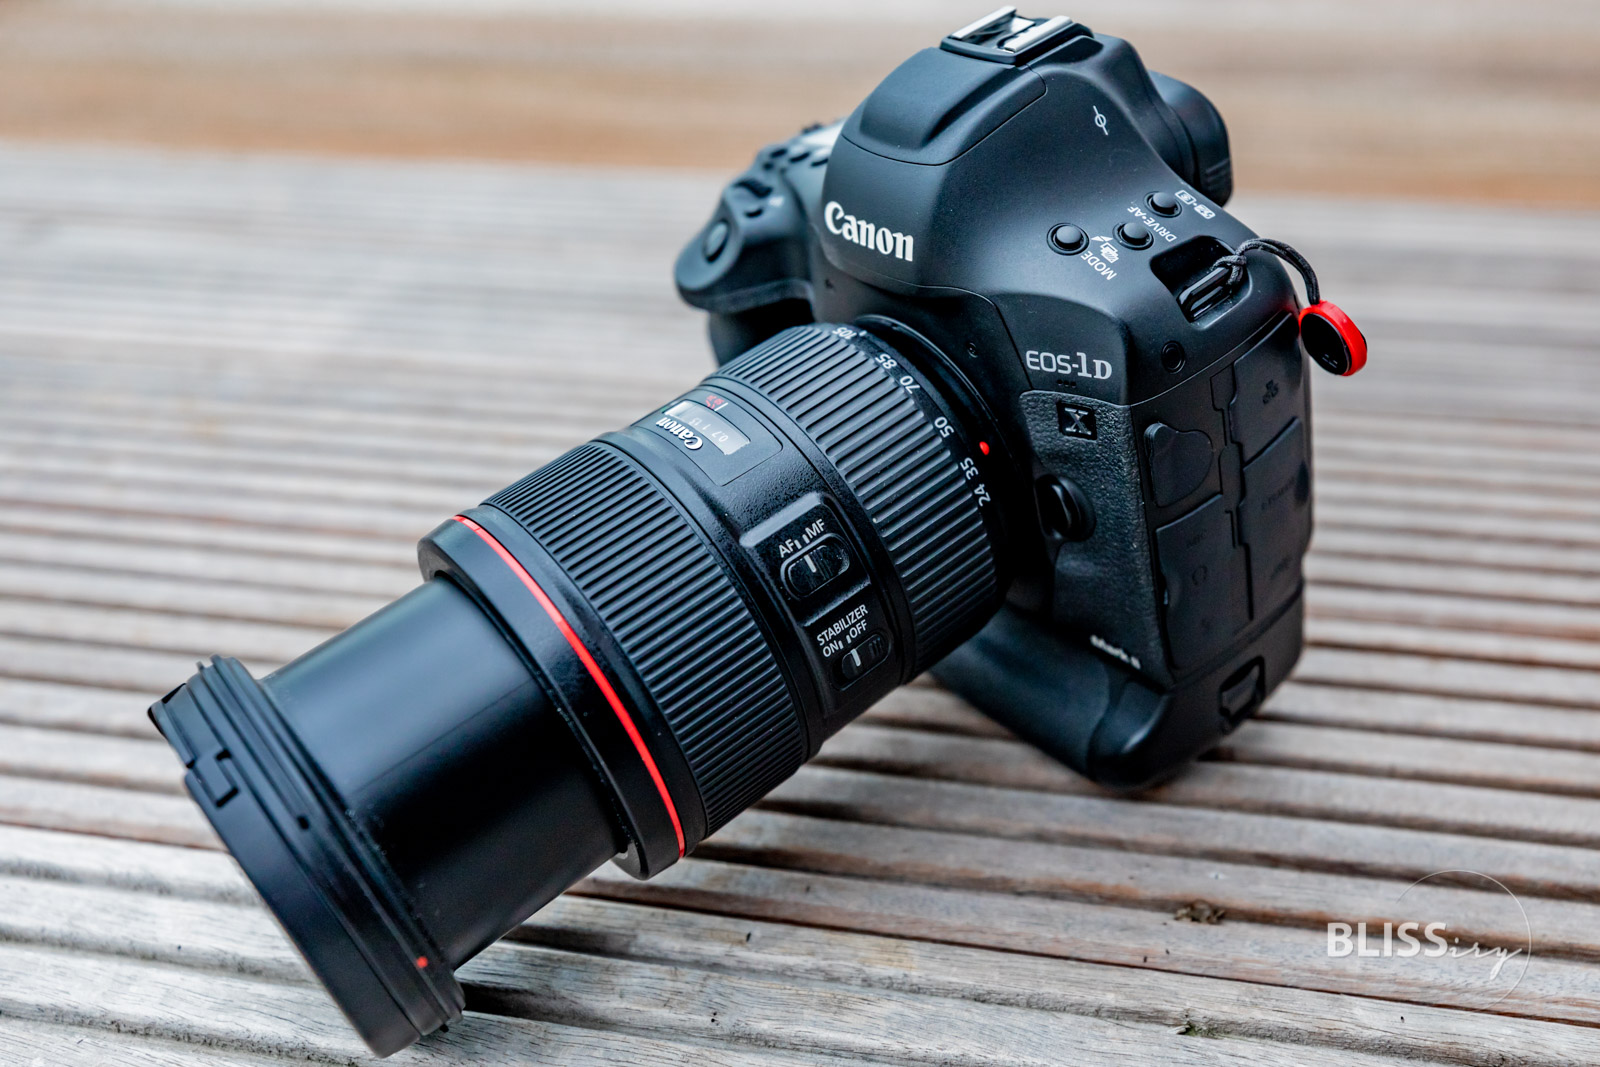 Canon EF 24-105mm f/4L IS II USM Objektiv - Bewertung und Erfahrung - Canon EF 24-105mm f/4L IS II USM Objektiv an Canon EOS 1Dx Mark - Photoblog - Review - Bewertung - Erfahrungsbericht - Wie gut ist das Objektiv?